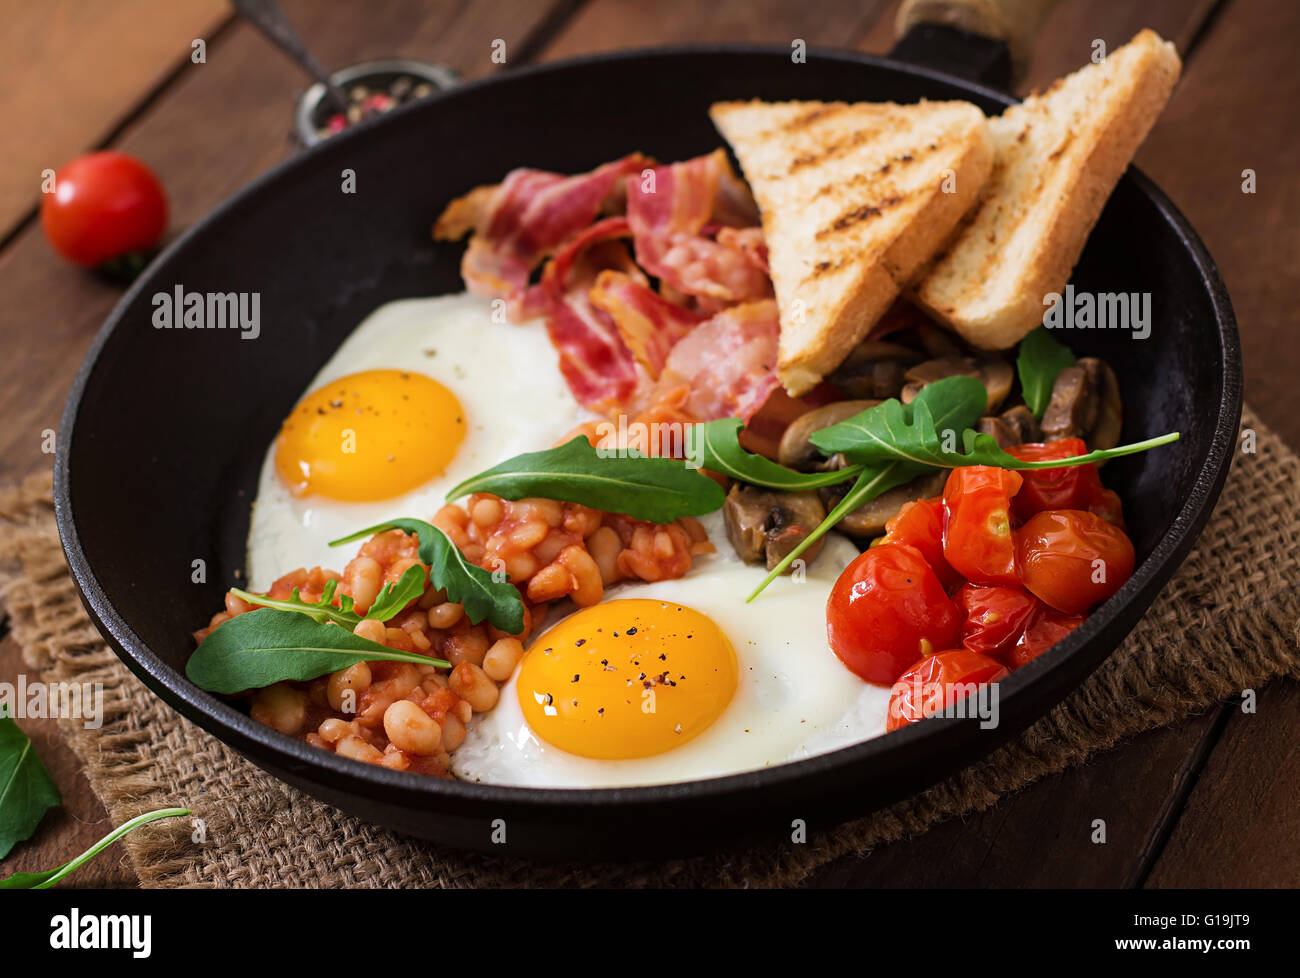 Englisches Frühstück - Bohnen, Tomaten, Pilze, Speck, Spiegelei und toast Stockfoto